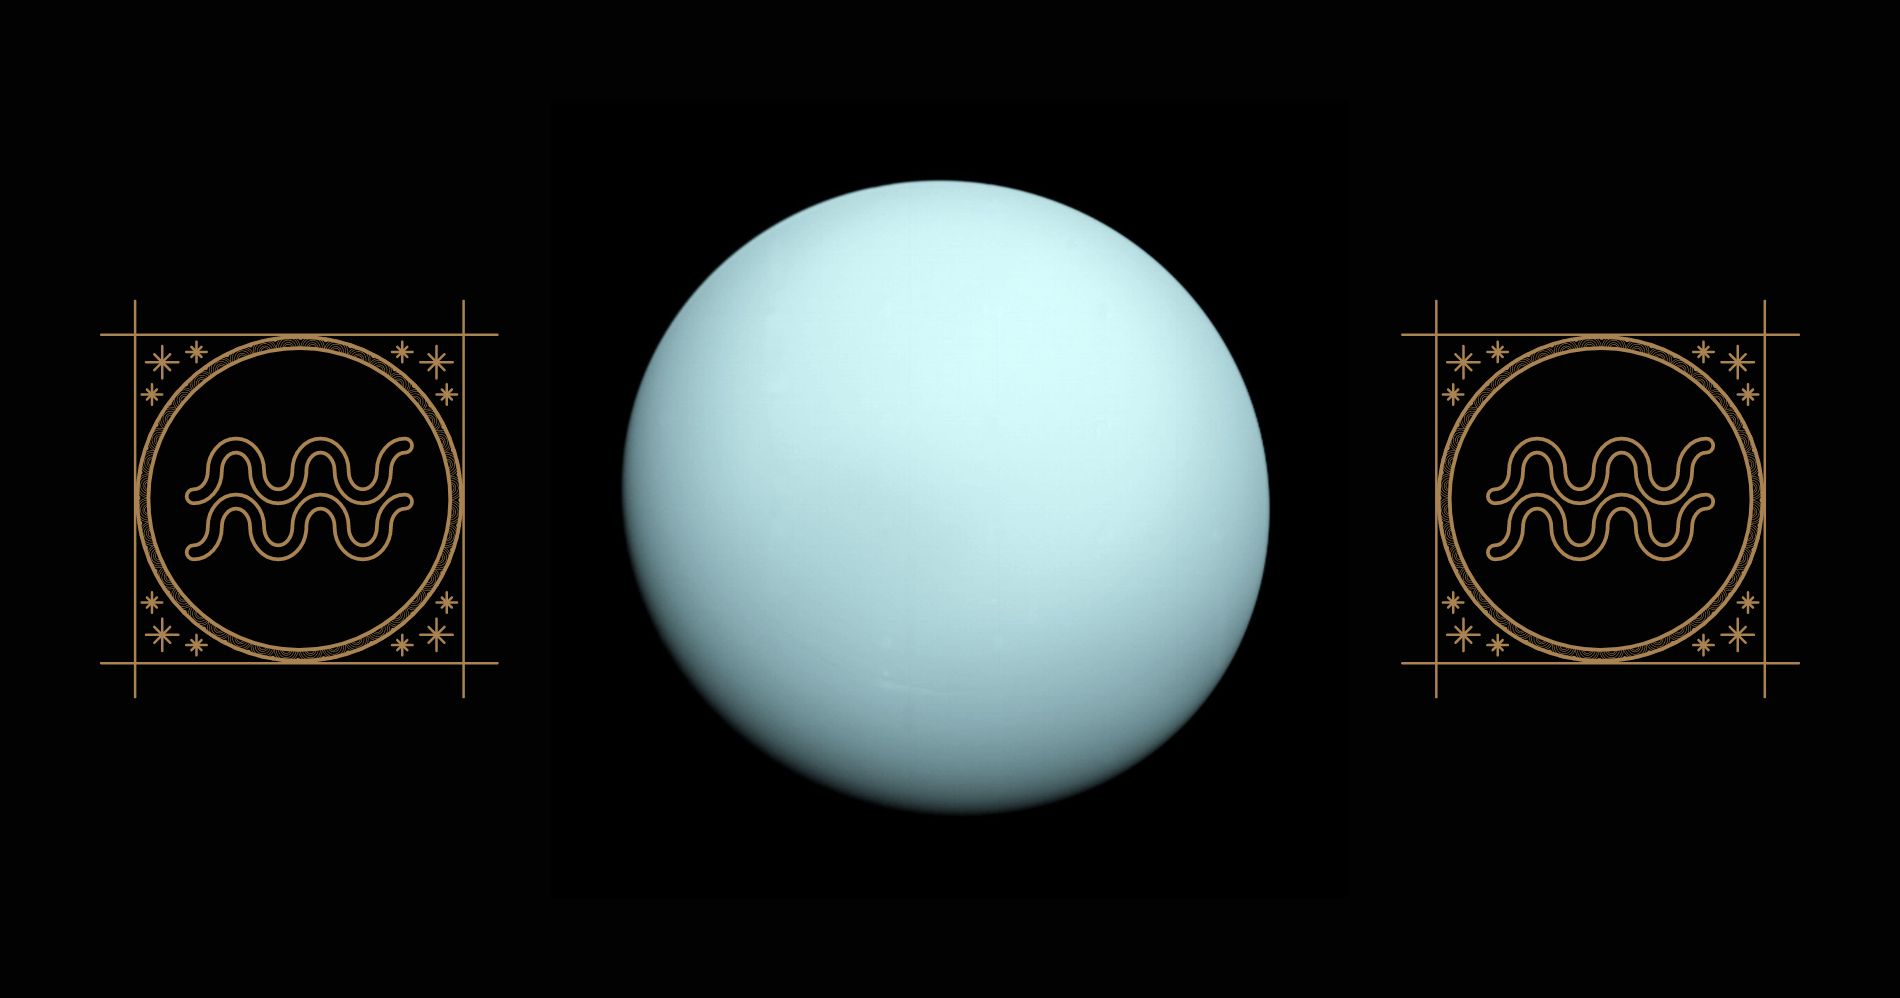 Planet Uranus - Aquarius Ilustrasi Bisnis Muda - Image: Canva